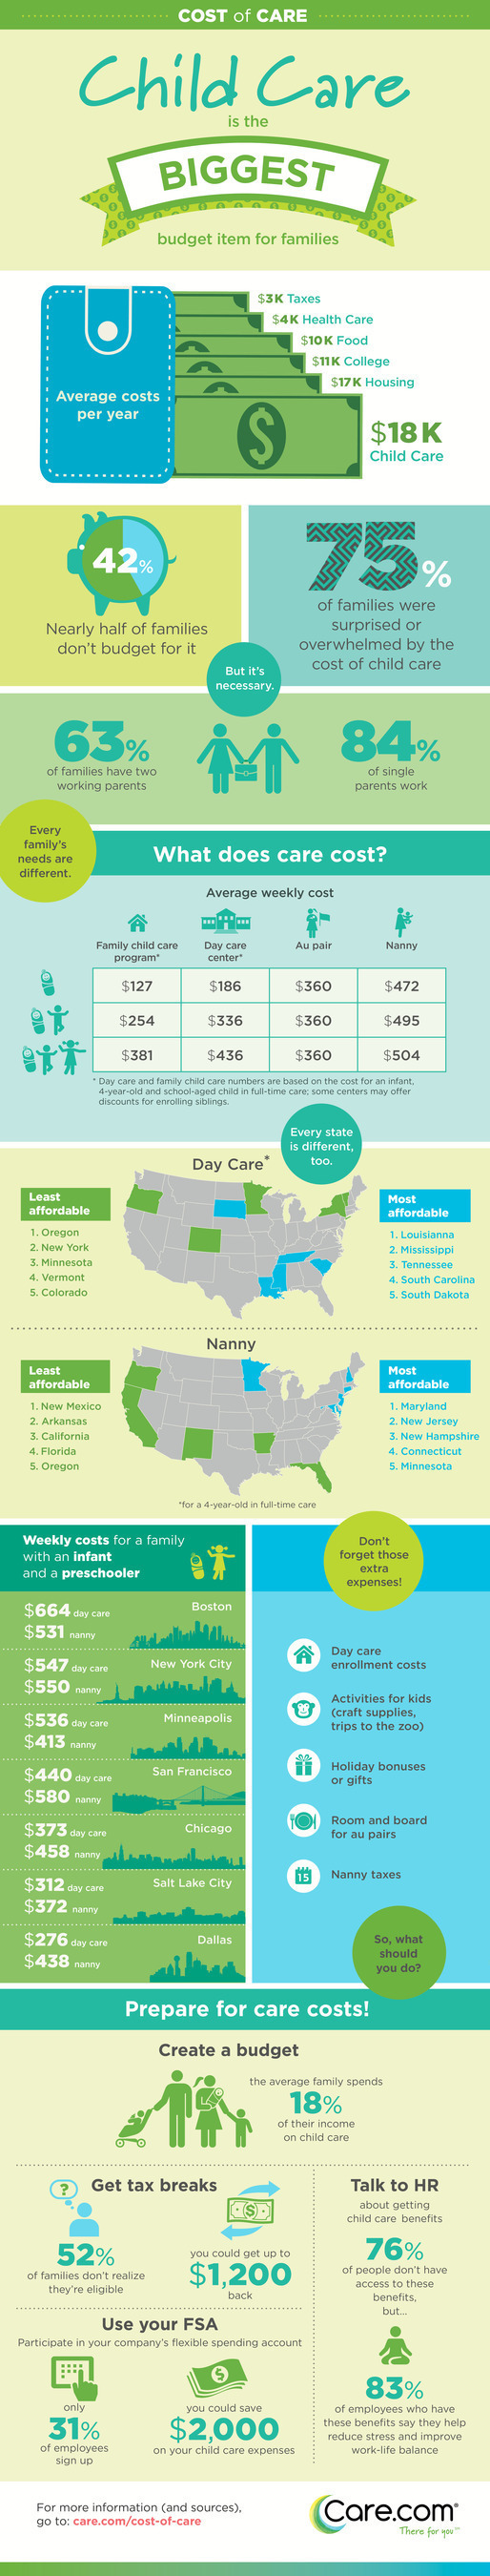 Care.com Reveals Nearly Half of U.S. Families Don't Budget for Child Care (PRNewsFoto/Care.com, Inc.)